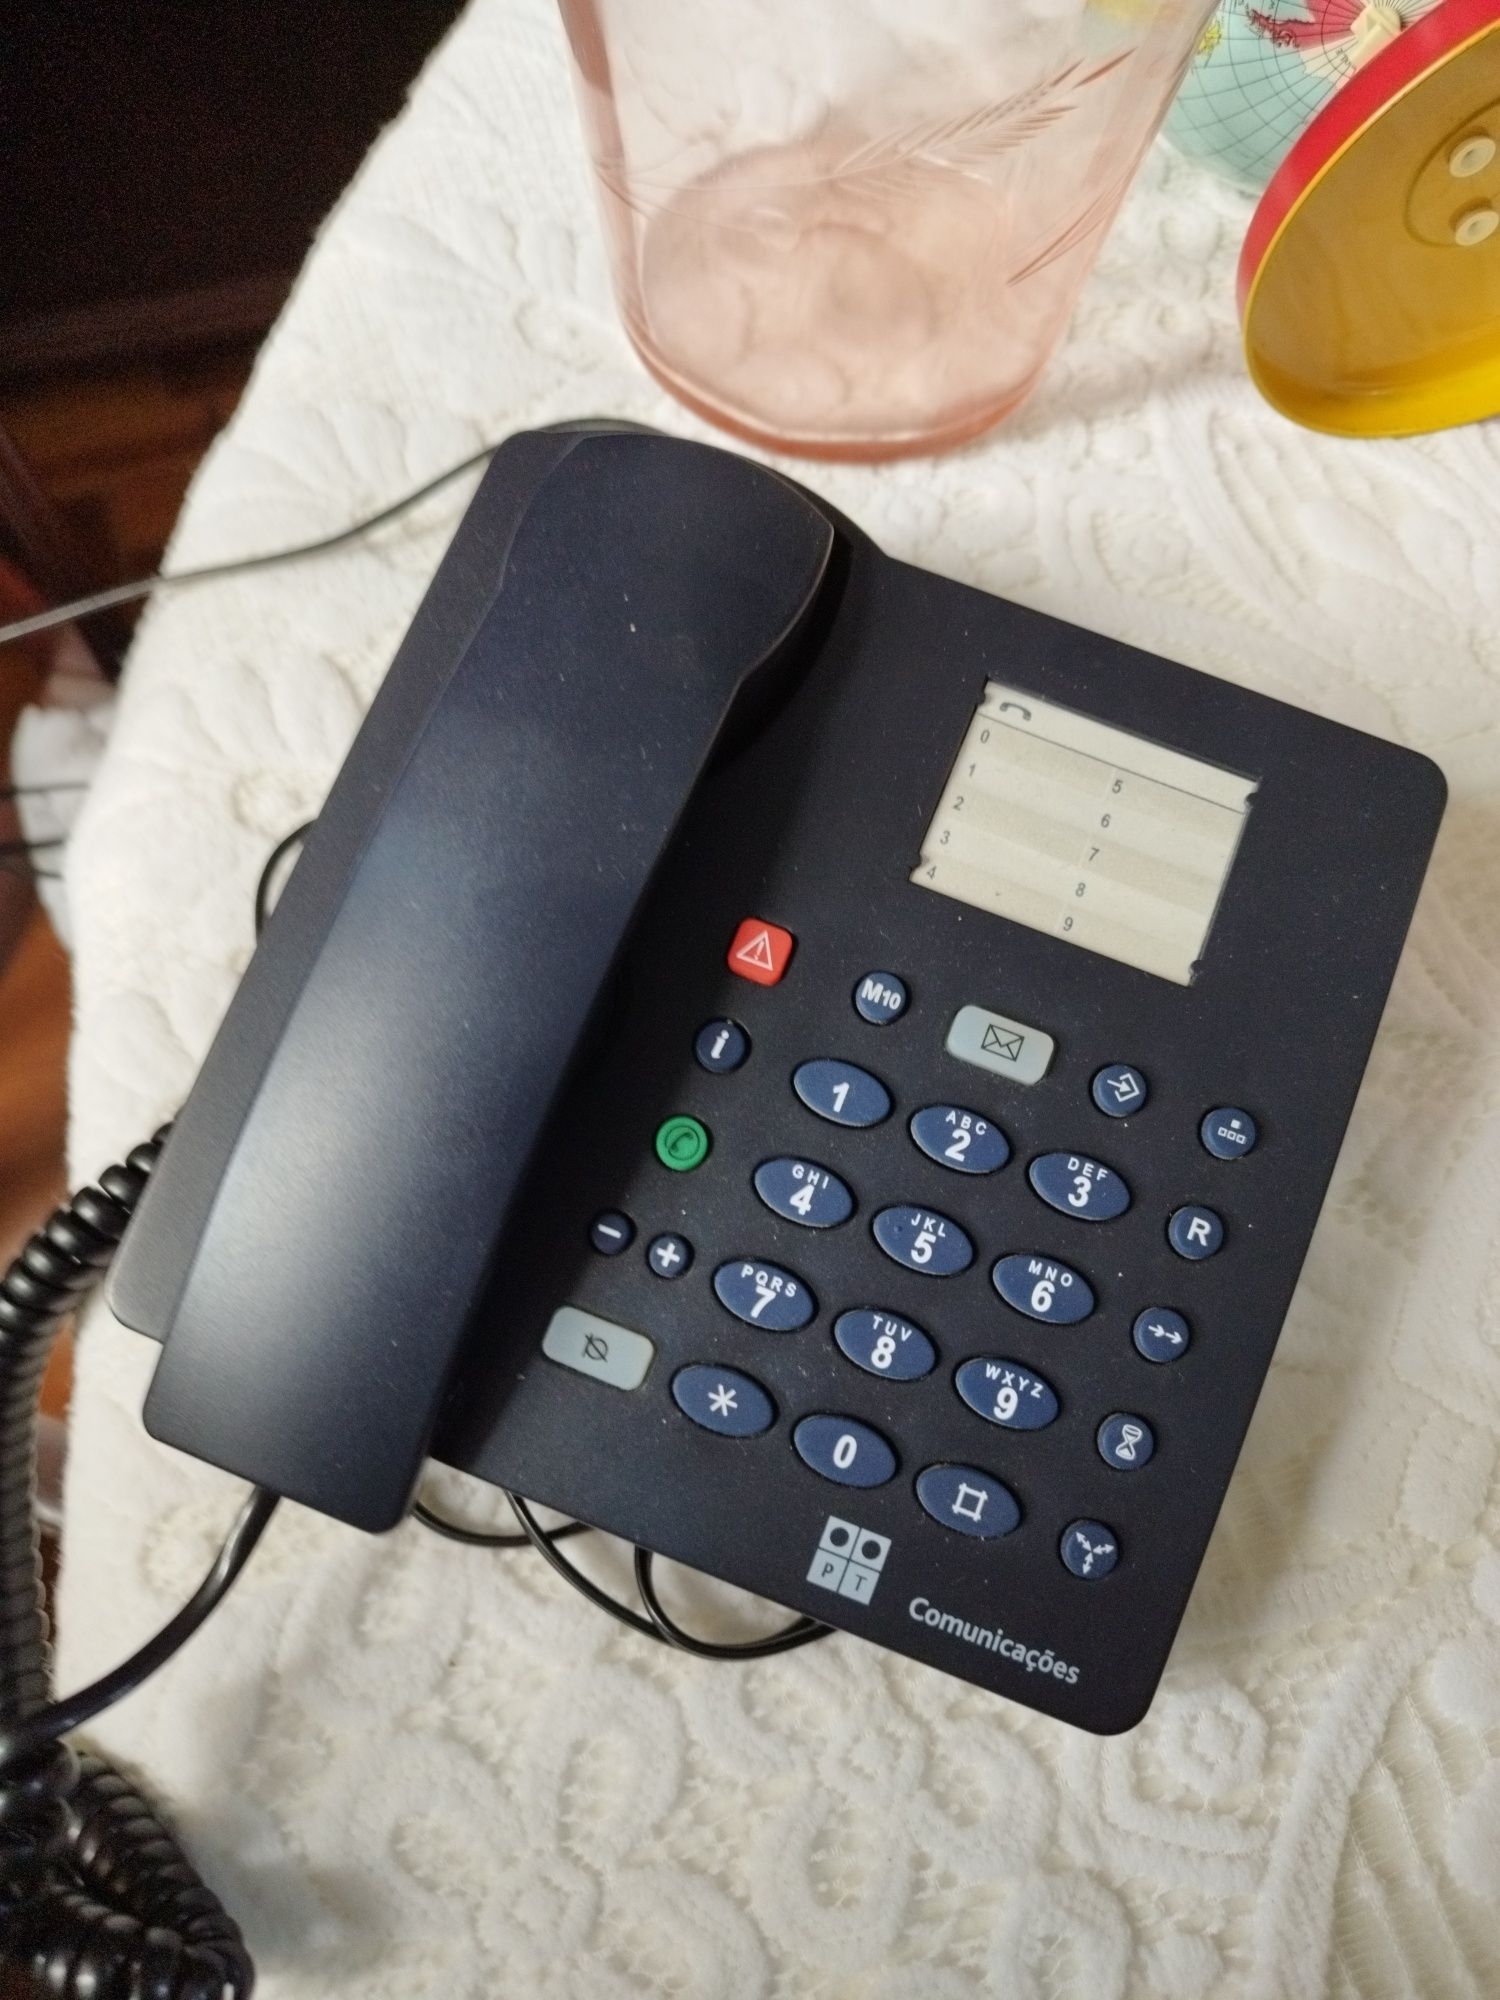 Telefone fixo com números grandes. Indicado para pessoas idosas.